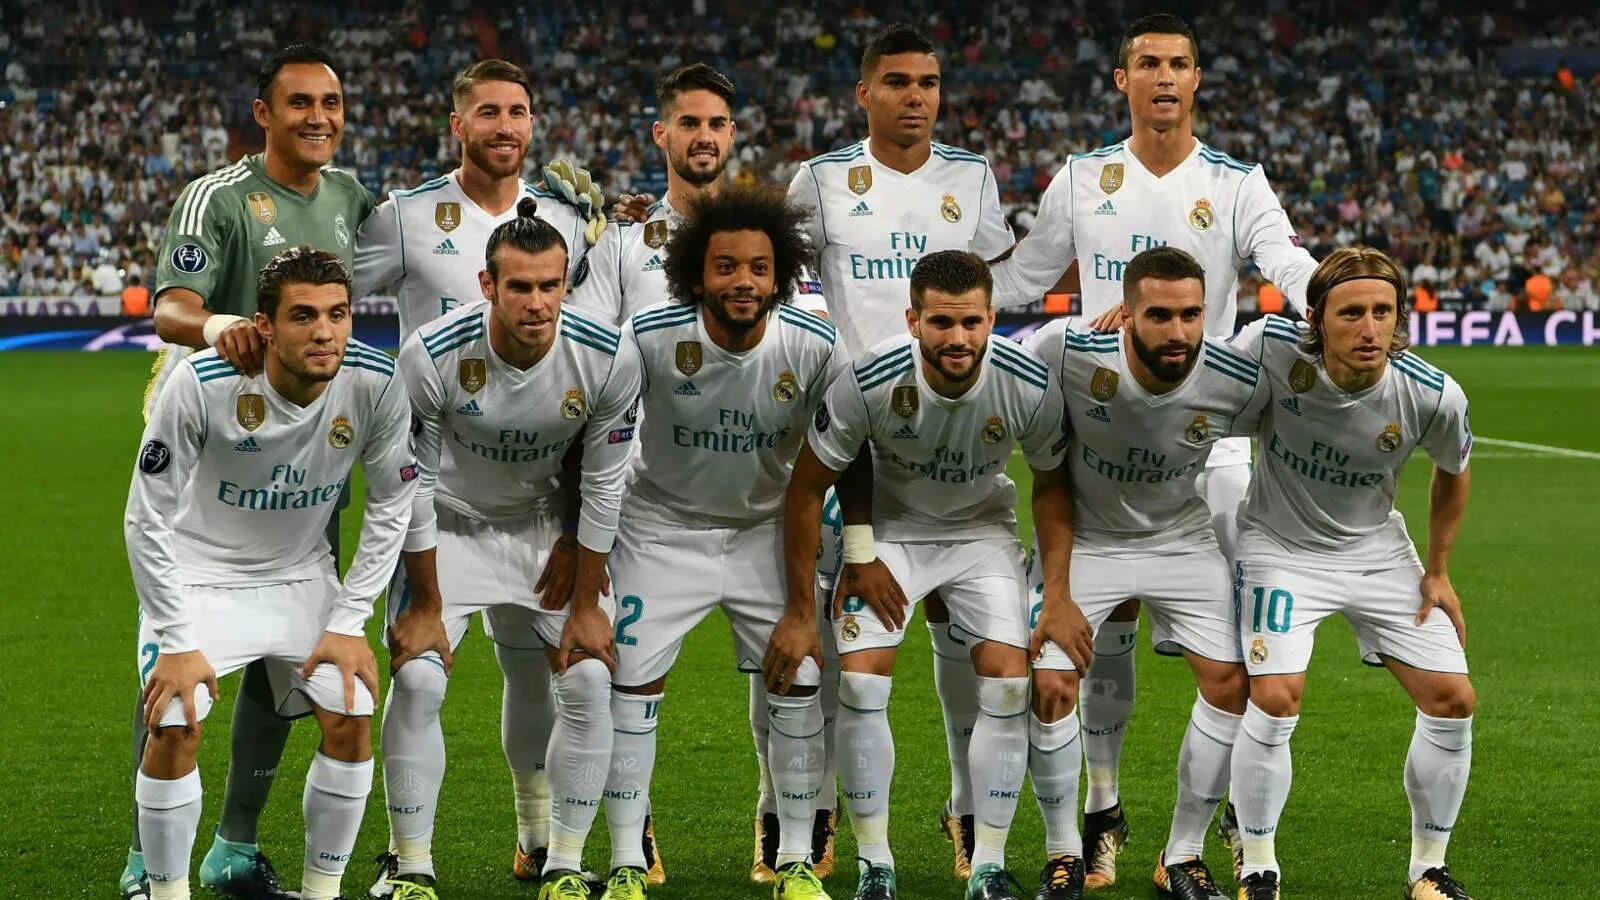 Команда Реал Мадрид с Роналду. Реал Мадрид Роналдо с командой. Состав Реал Мадрида с Роналдо. Команда Реал Мадрид 2017 с Роналду.